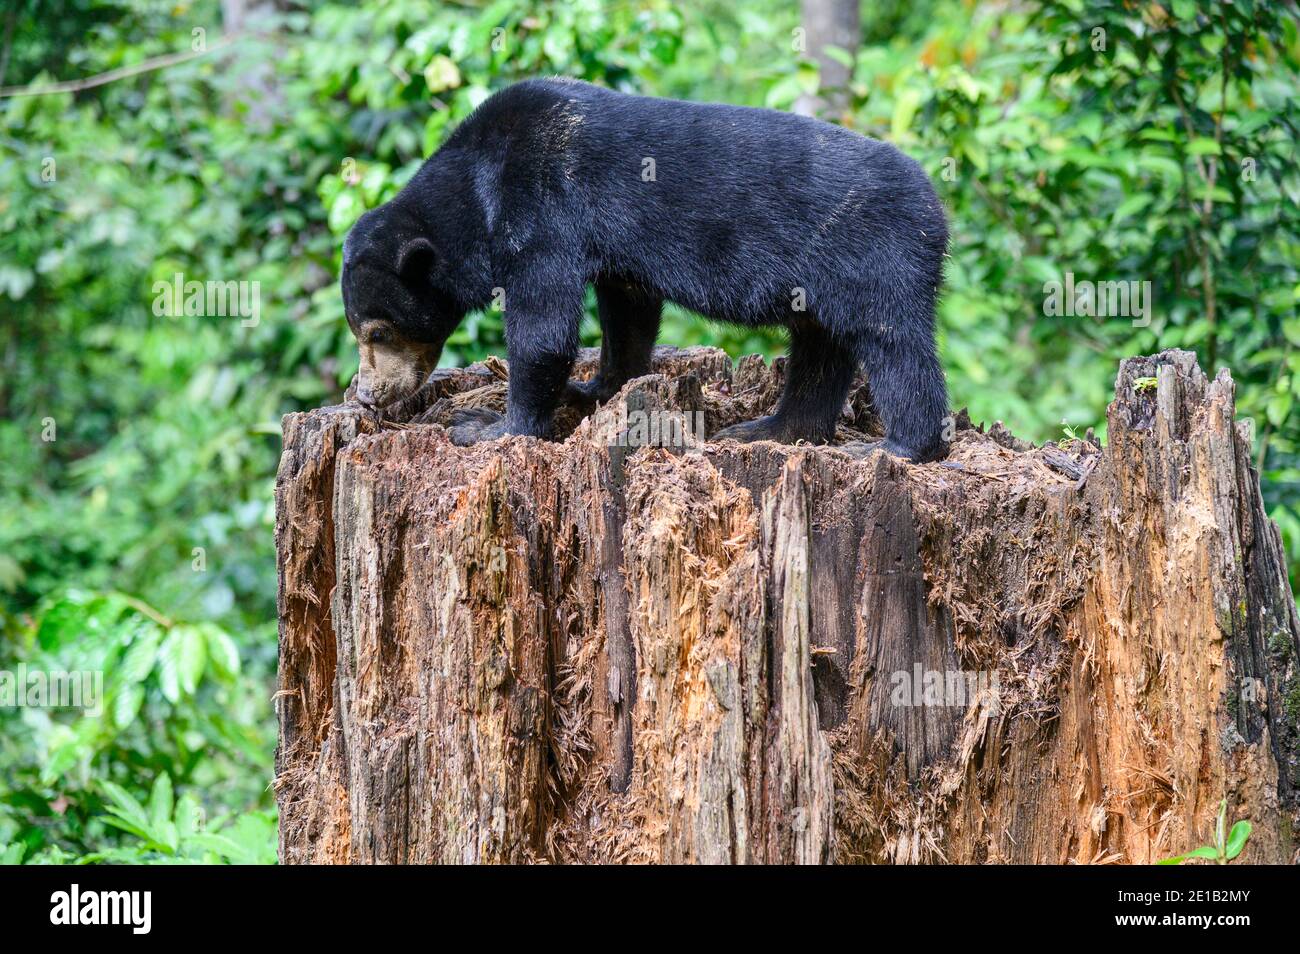 One Sun bear on tree stump at the Borneo Sun Bear Conservation Center in Malaysia Stock Photo